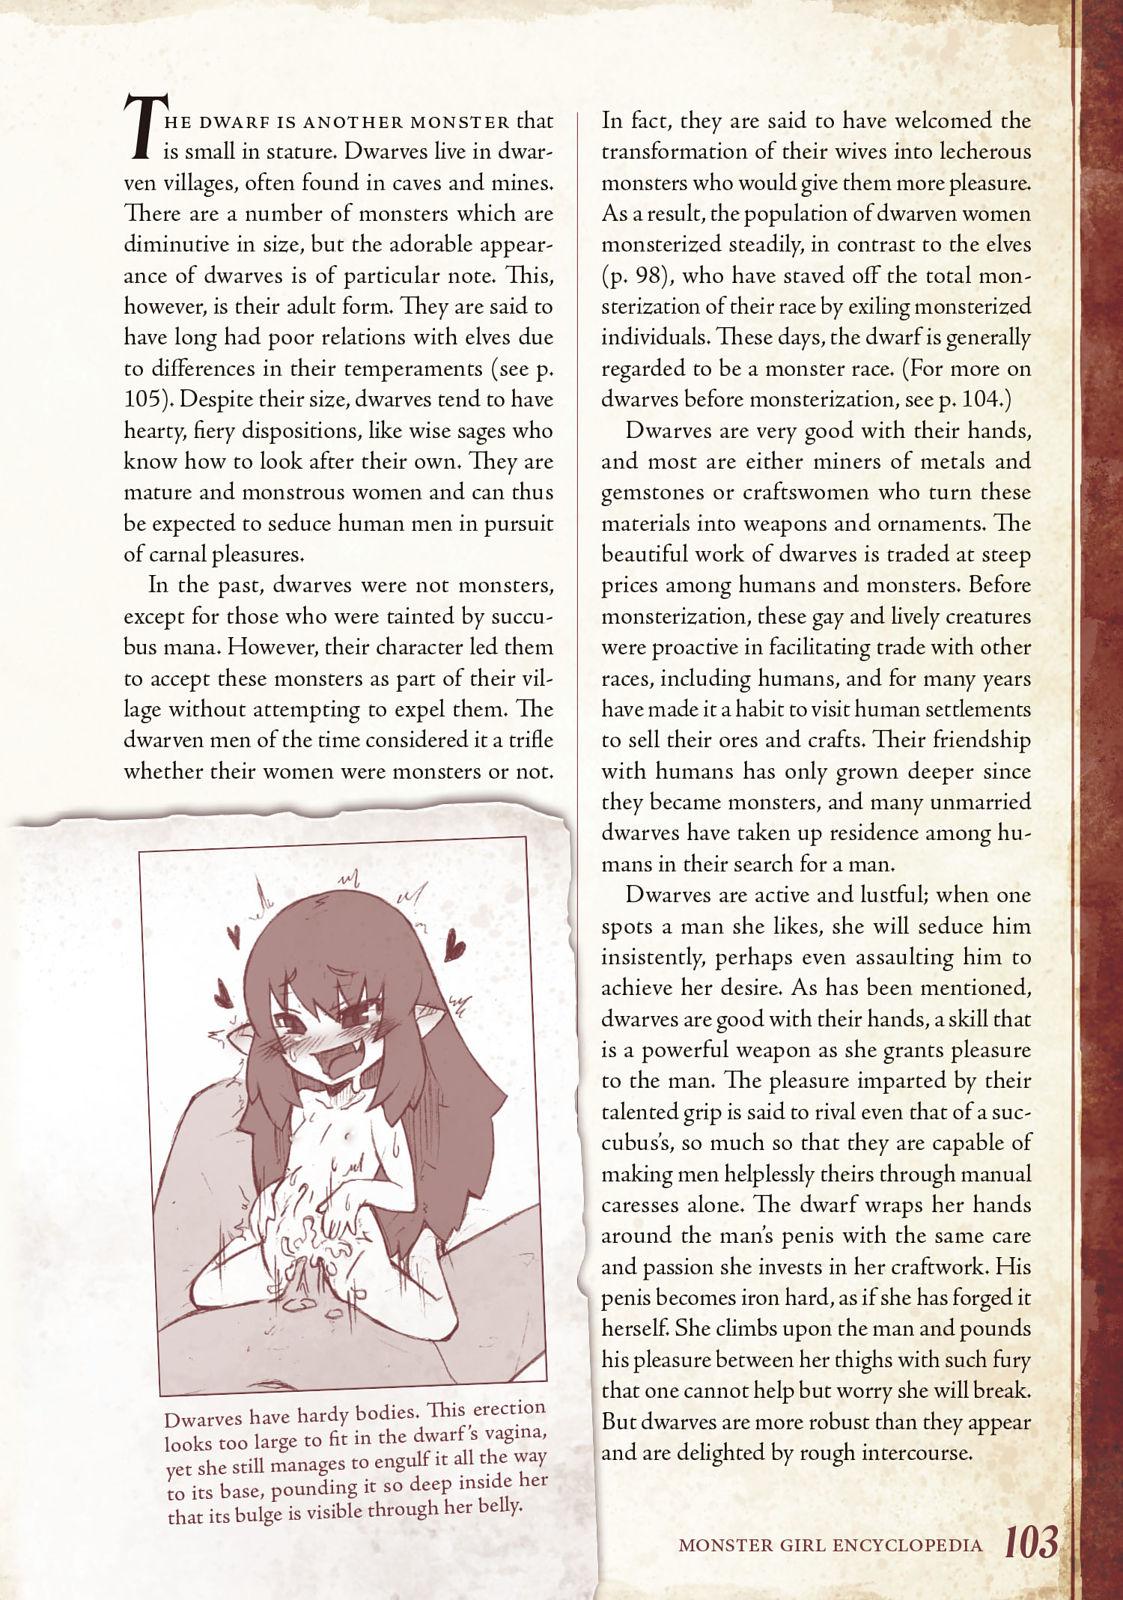 Monster Girl Encyclopedia Vol. 1 103